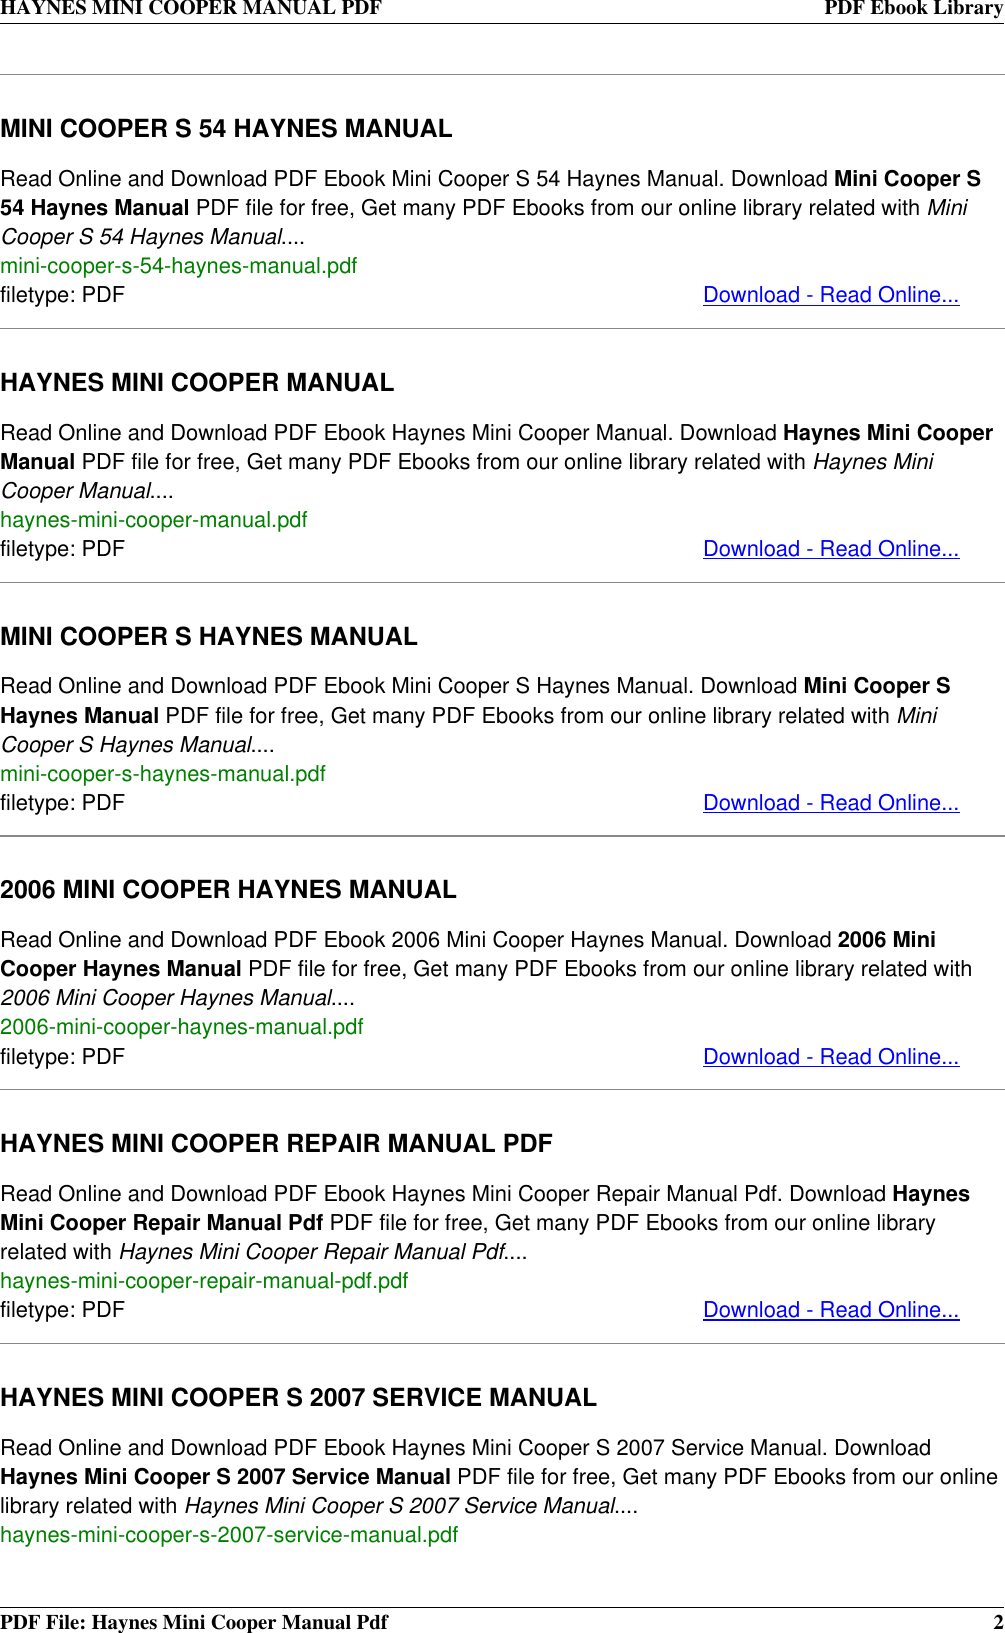 haynes repair manual mini cooper pdf